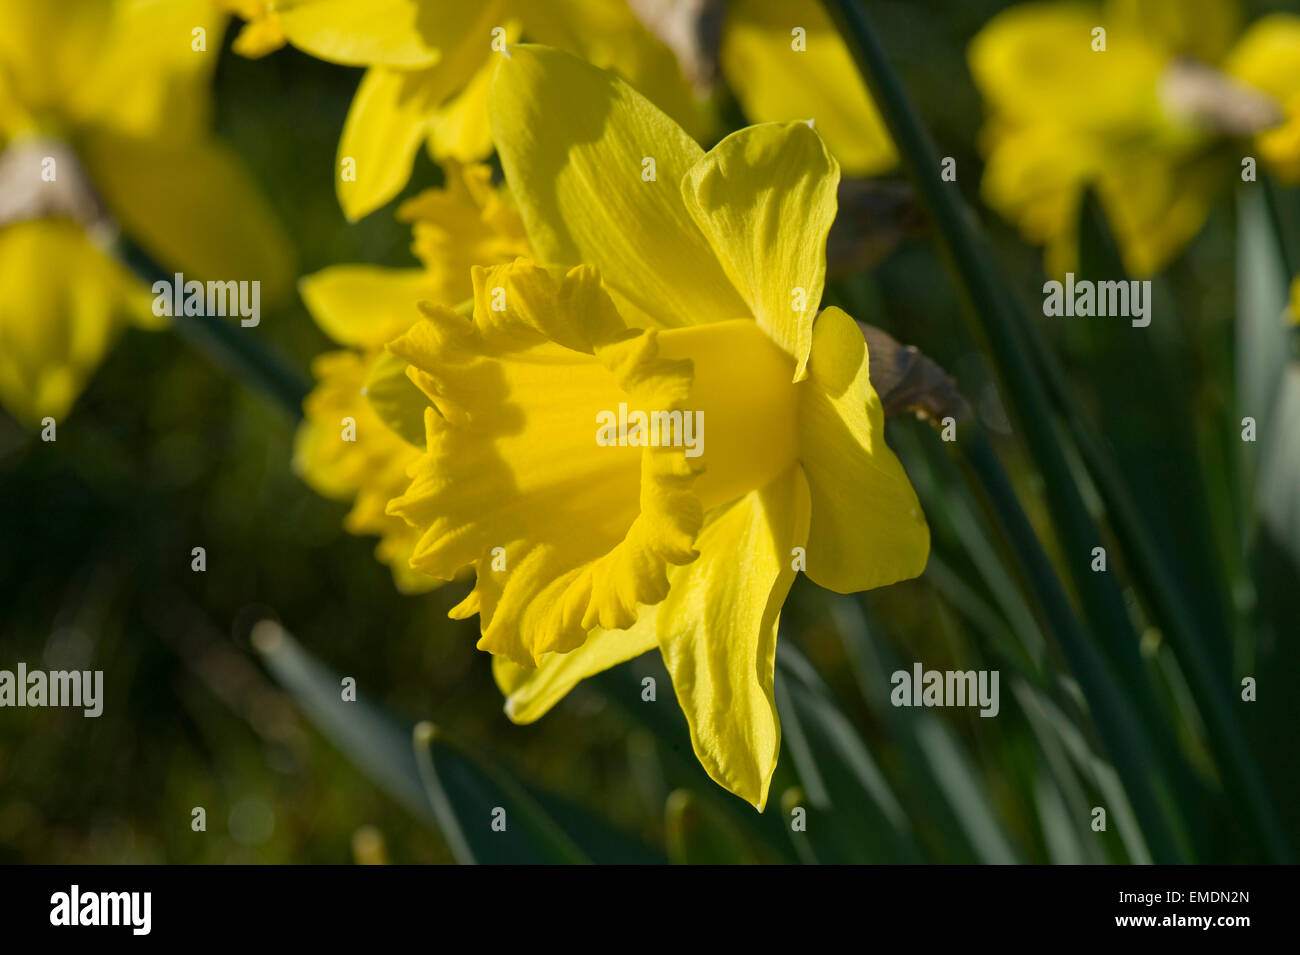 Corona amarilla y tépalos típica de narcisos en flor de luz por la mañana temprano Foto de stock